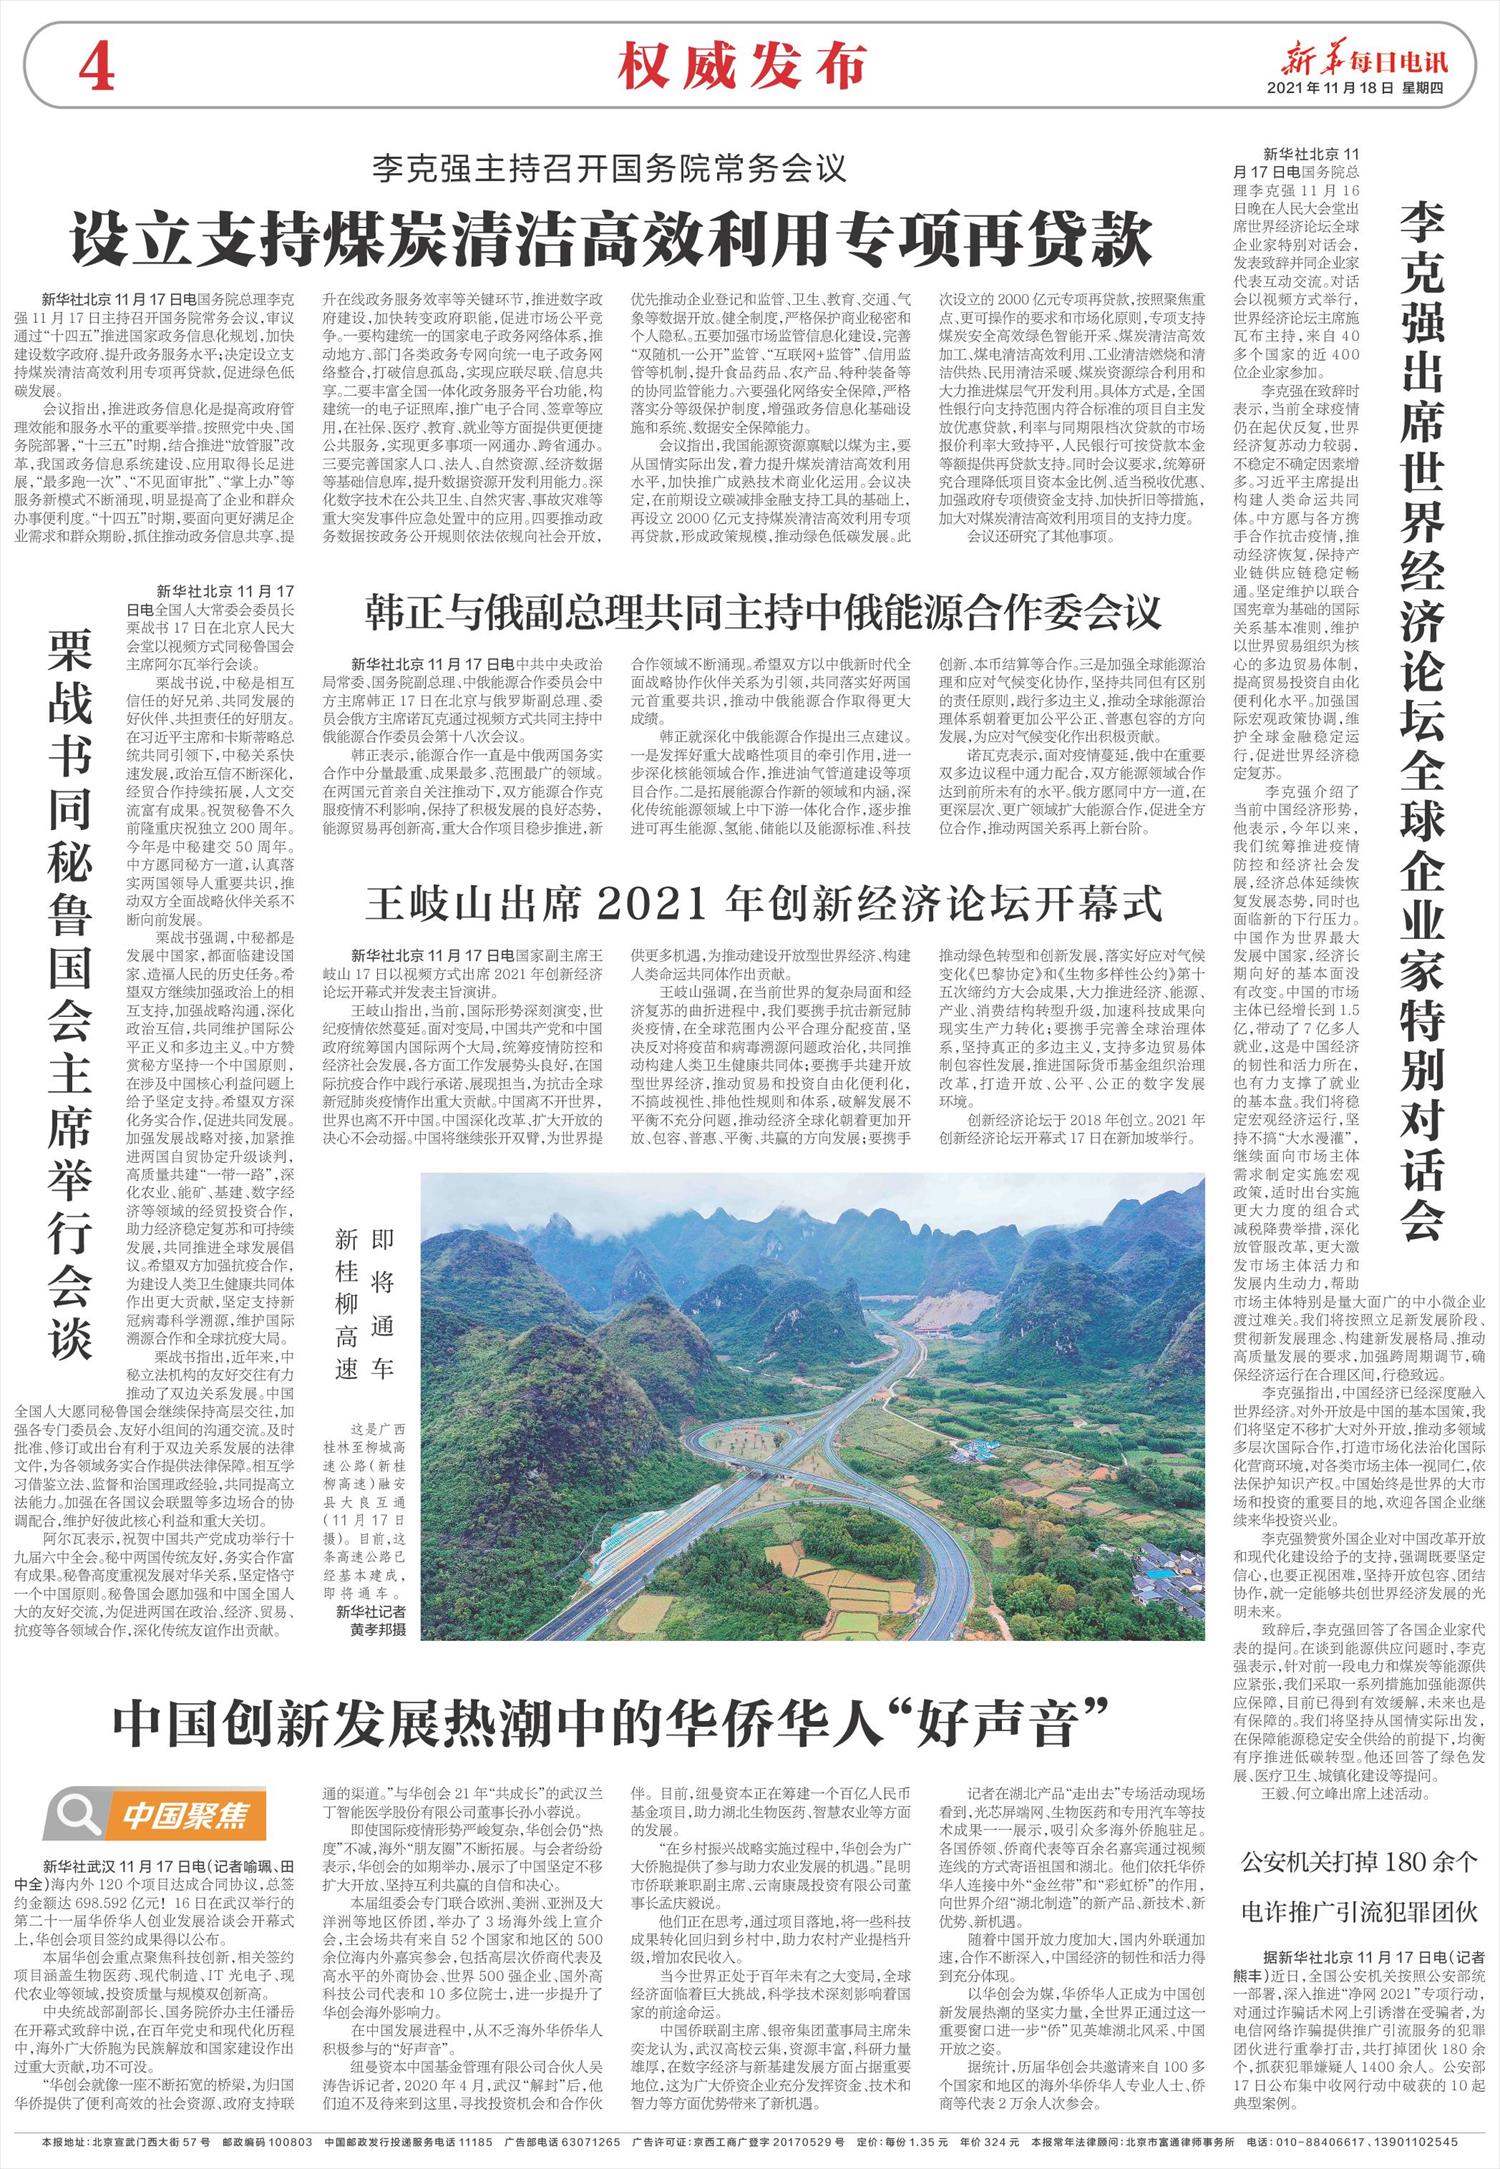 新华每日电讯-微报纸-2021年11月18日